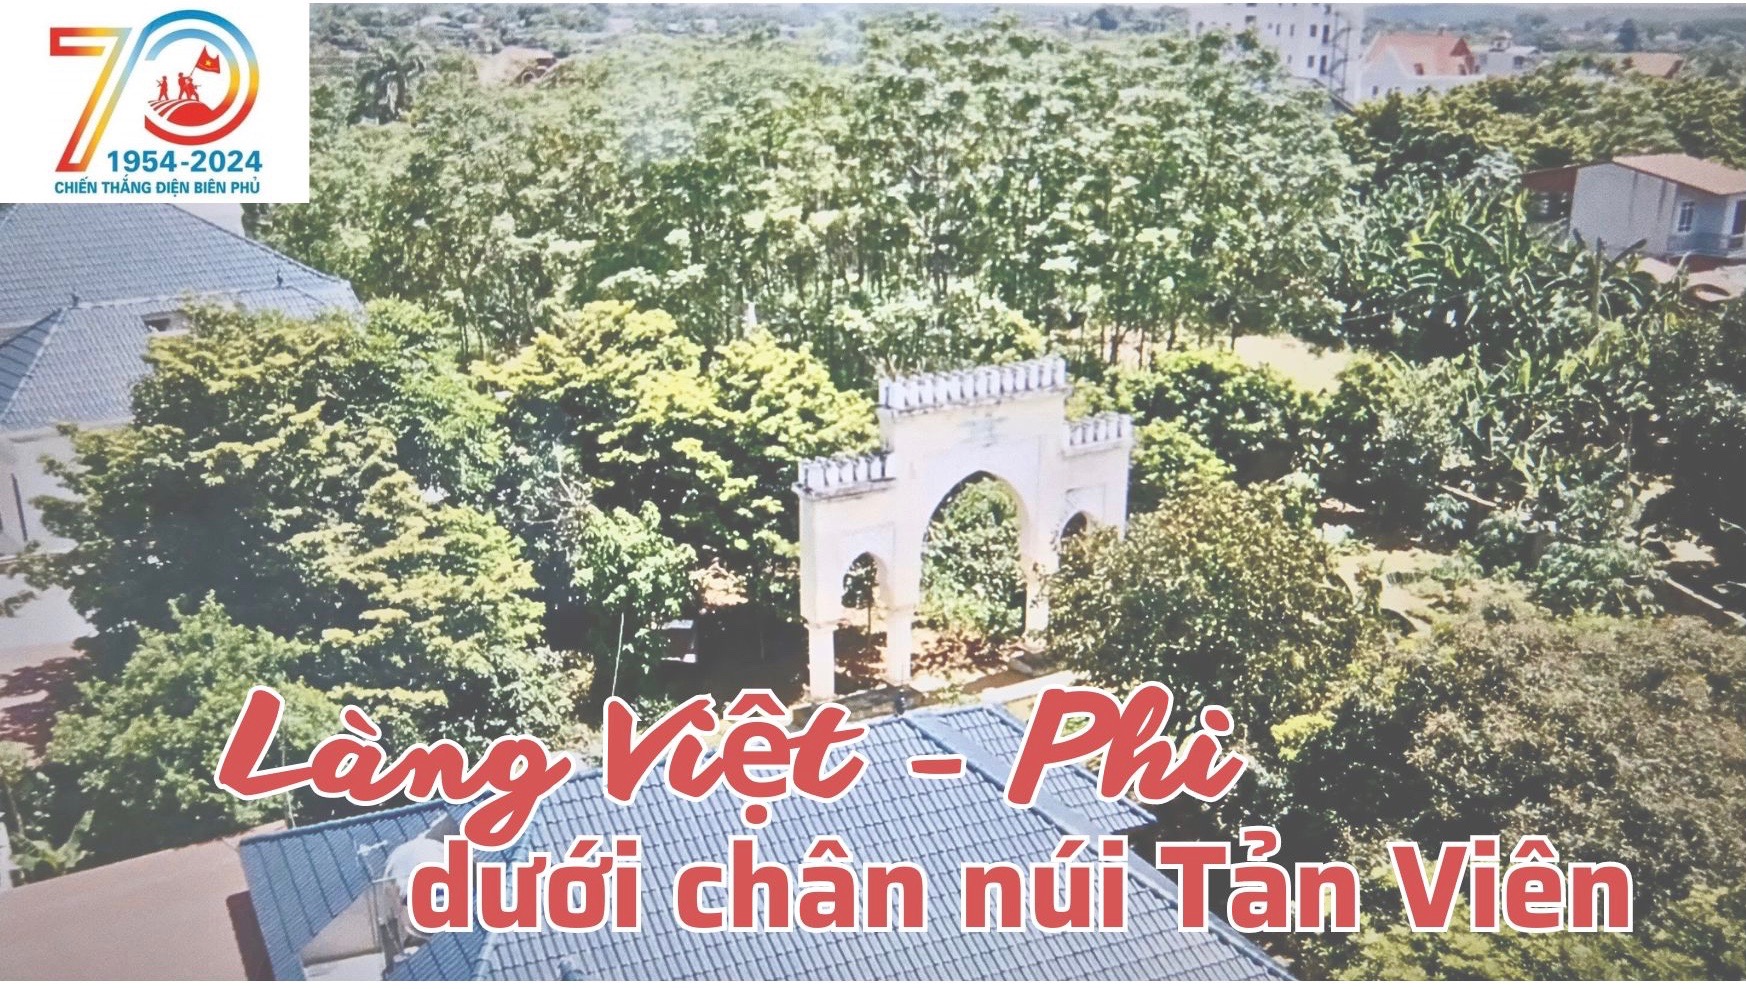 Làng Việt - Phi dưới chân núi Tản Viên - Ảnh 1